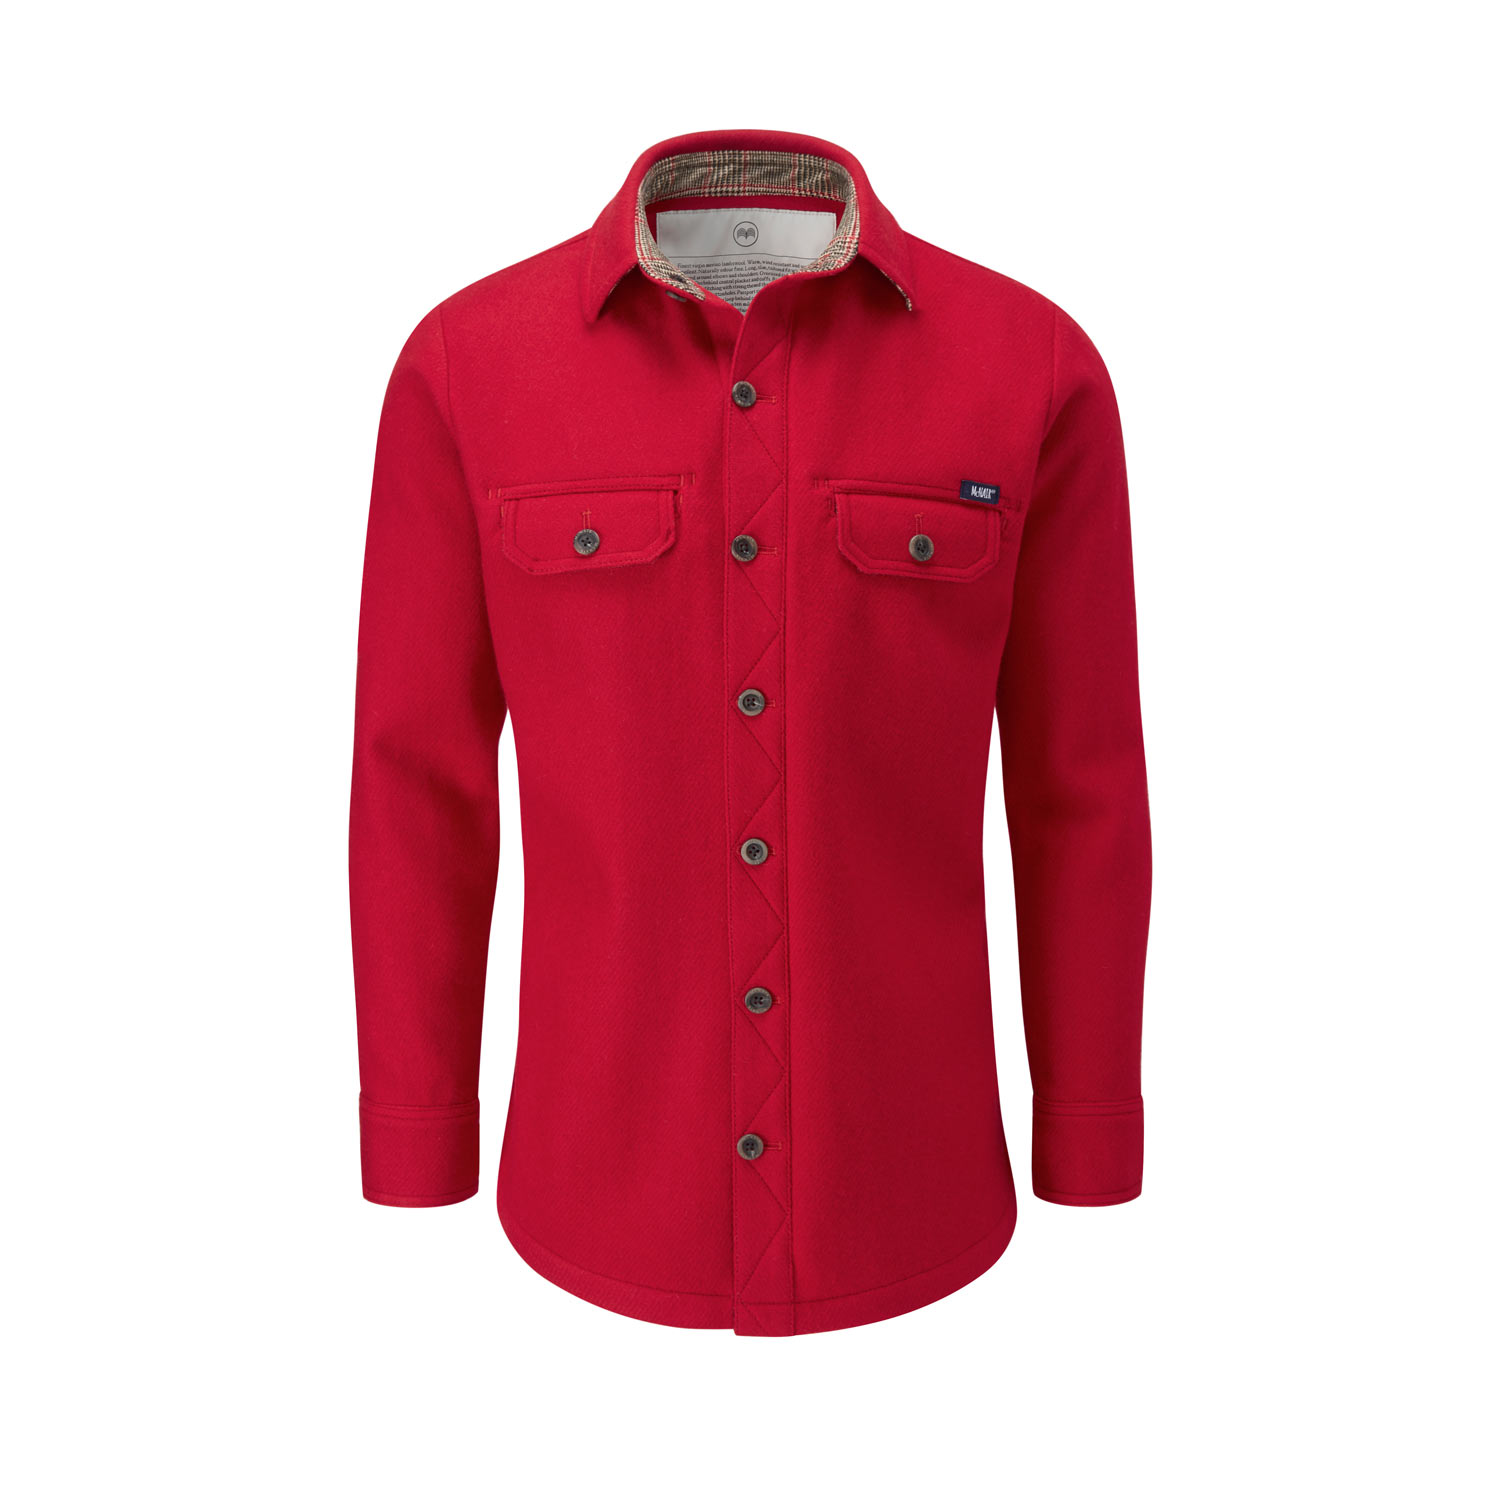 McNair merino Ridge Shirt in Chilli red